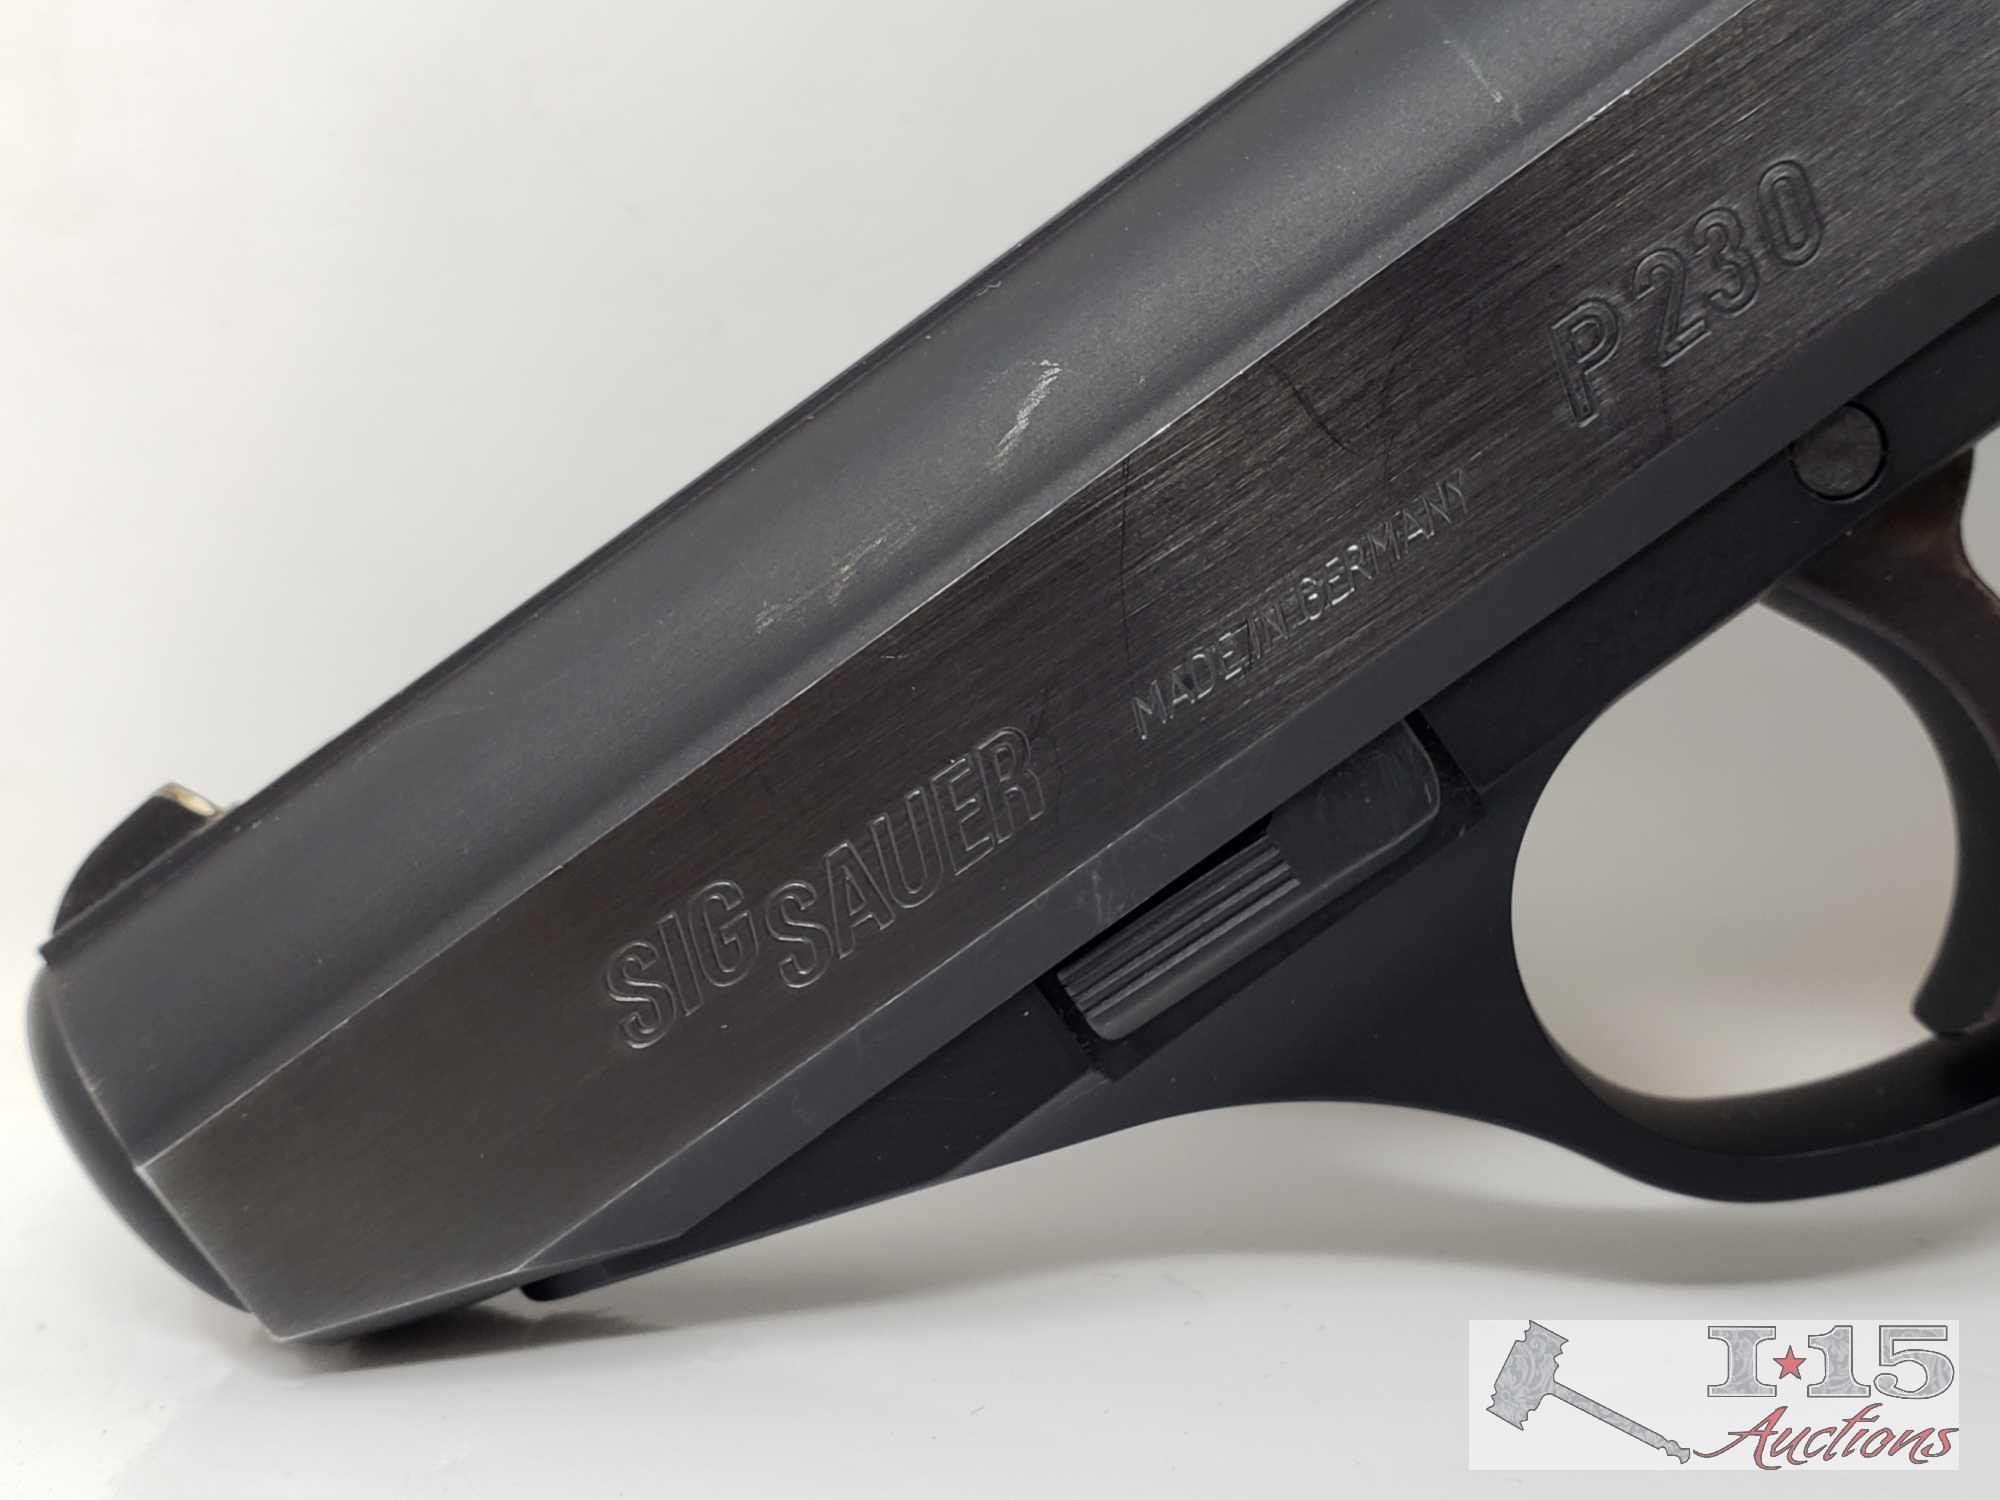 Sig Sauer P230 Semi-Auto 9mm kruz(.380 ACP) Pistol